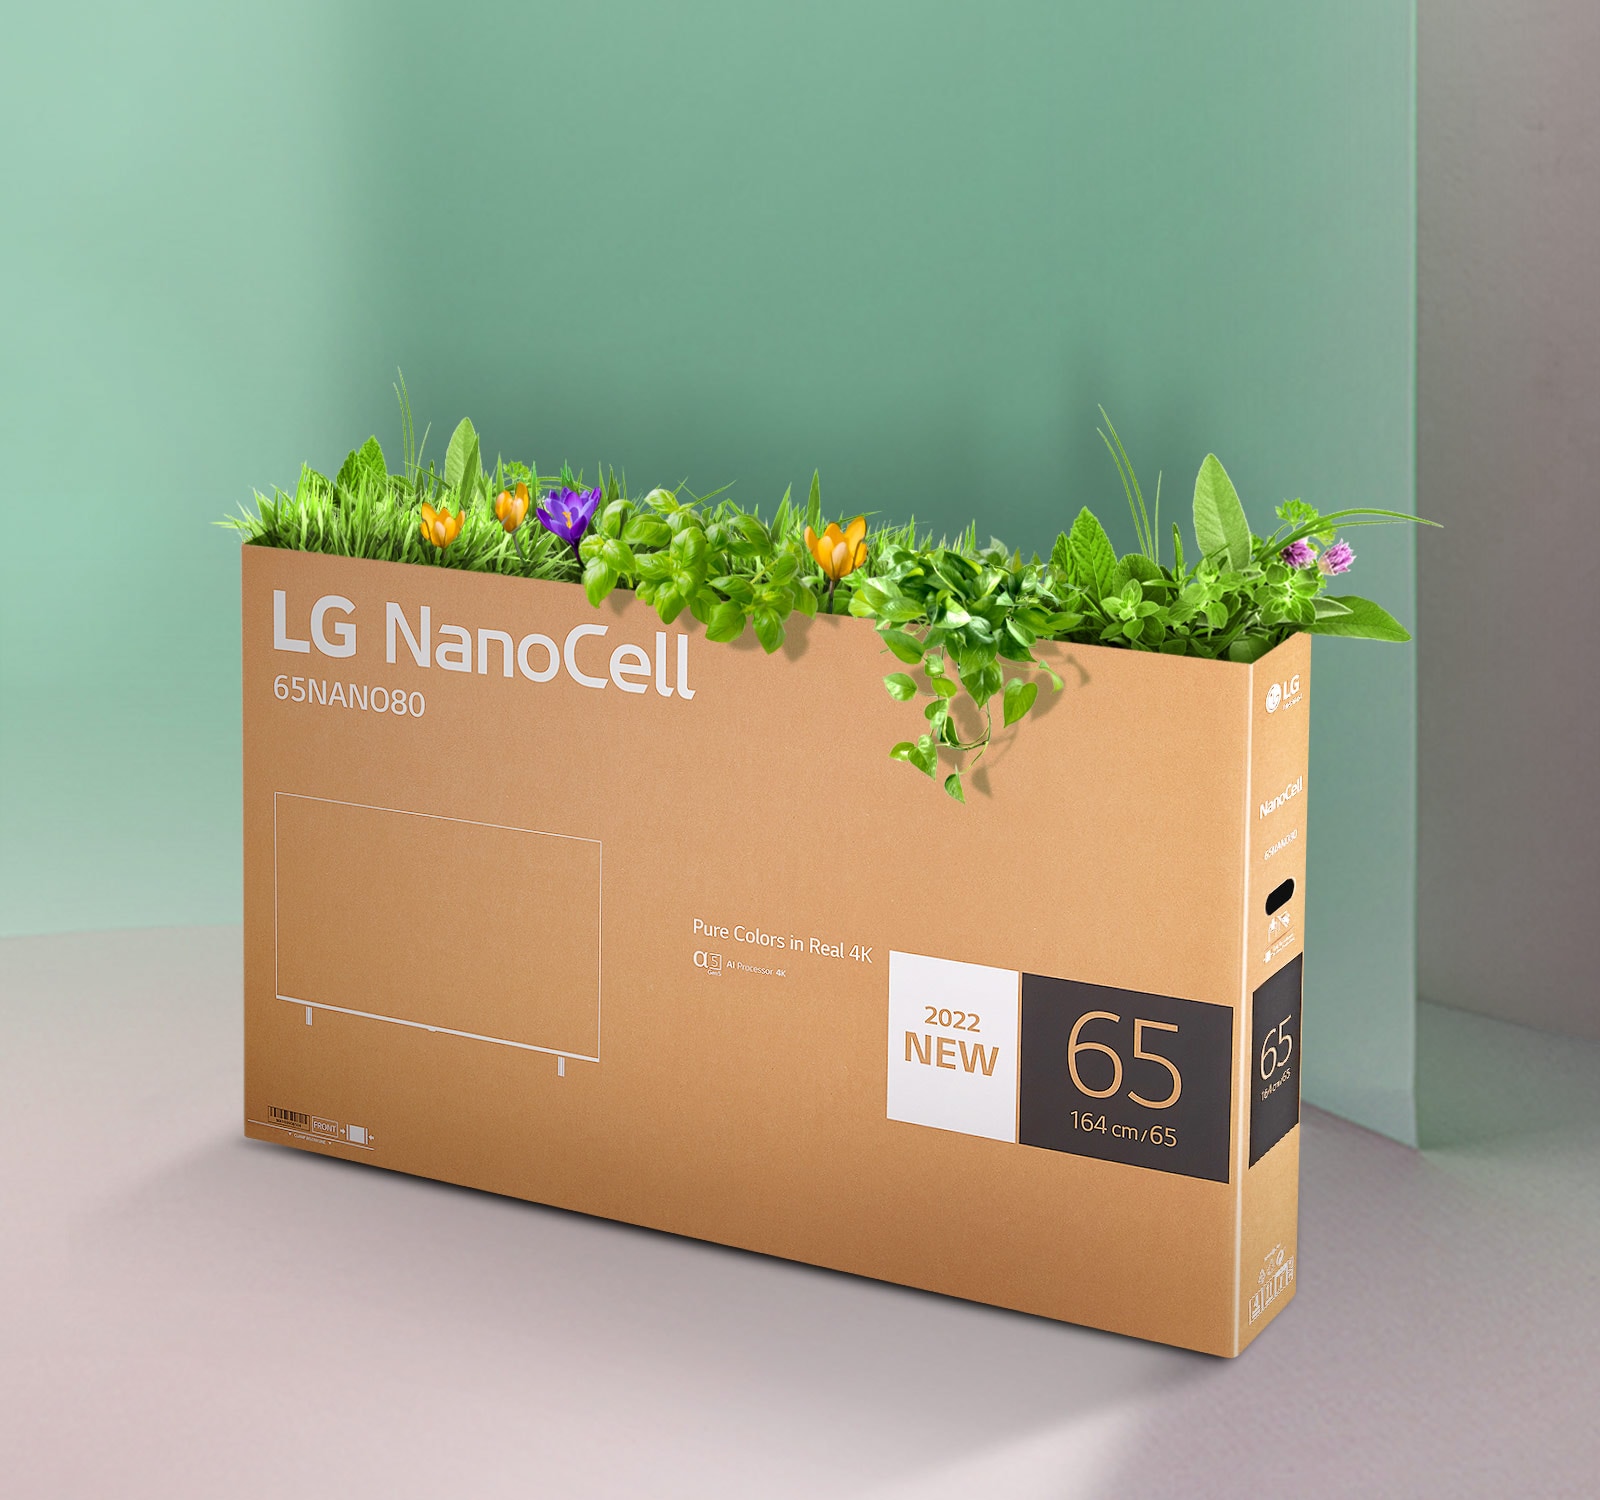 Škatla LG NanoCell TV, ki jo je mogoče reciklirati, z rožami in rastlinami, ki prihajajo iz vrha škatle.